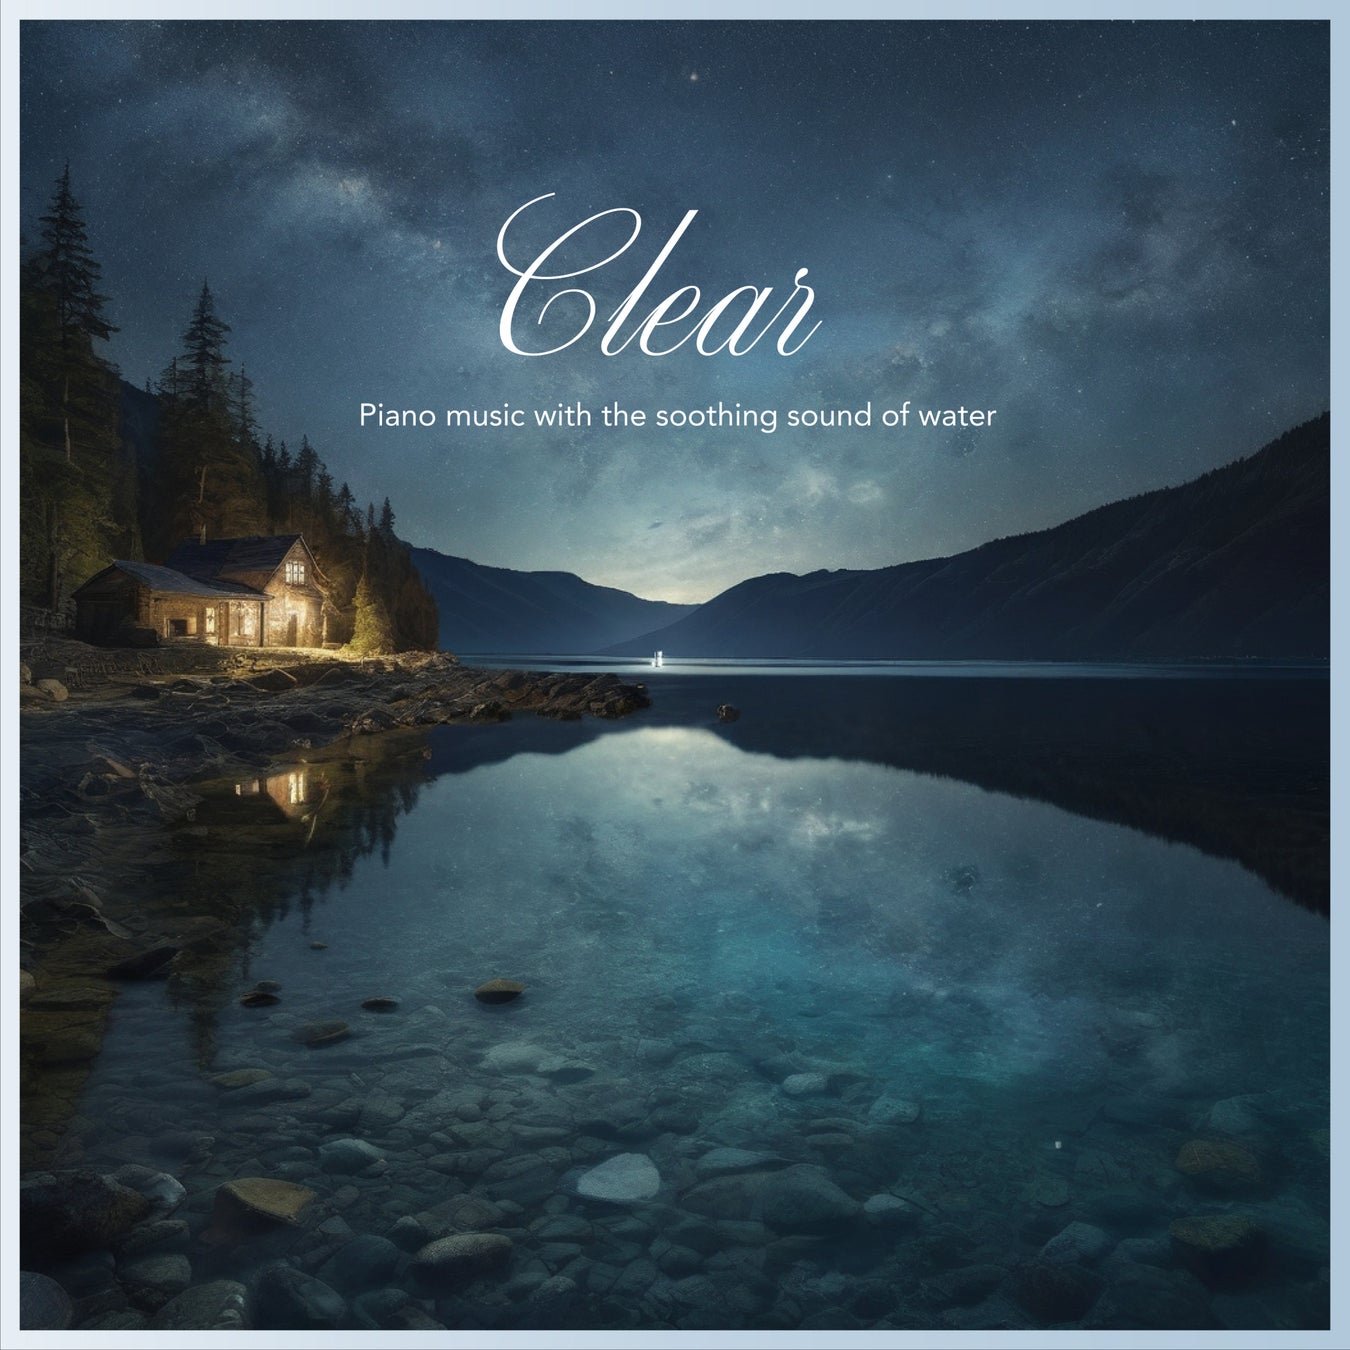 深い沈黙の中で響くピアノ。注目のアーティスト『クラッシームーン』による最新アルバム『Clear – Piano music with the soothing sound of water-』。